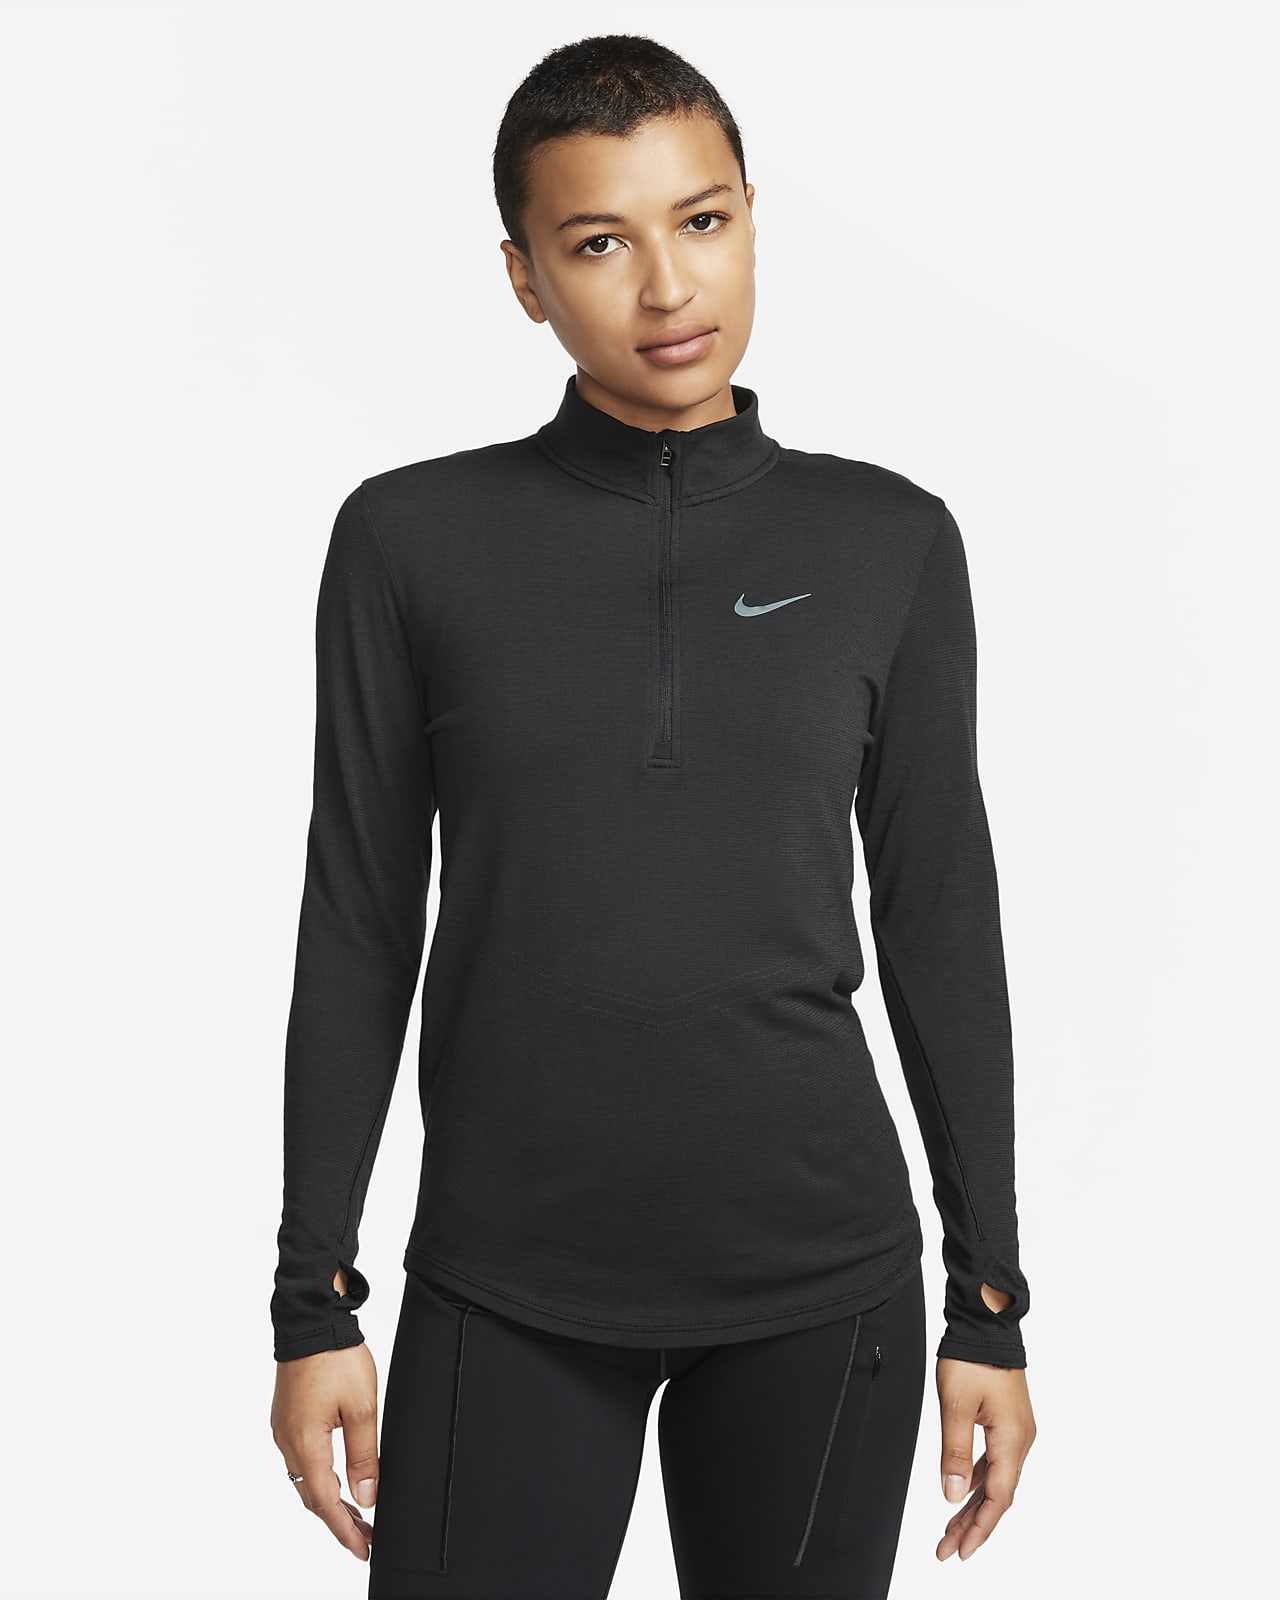 Nike Dri-FIT Swift langermet løpeoverdel i ull til dame